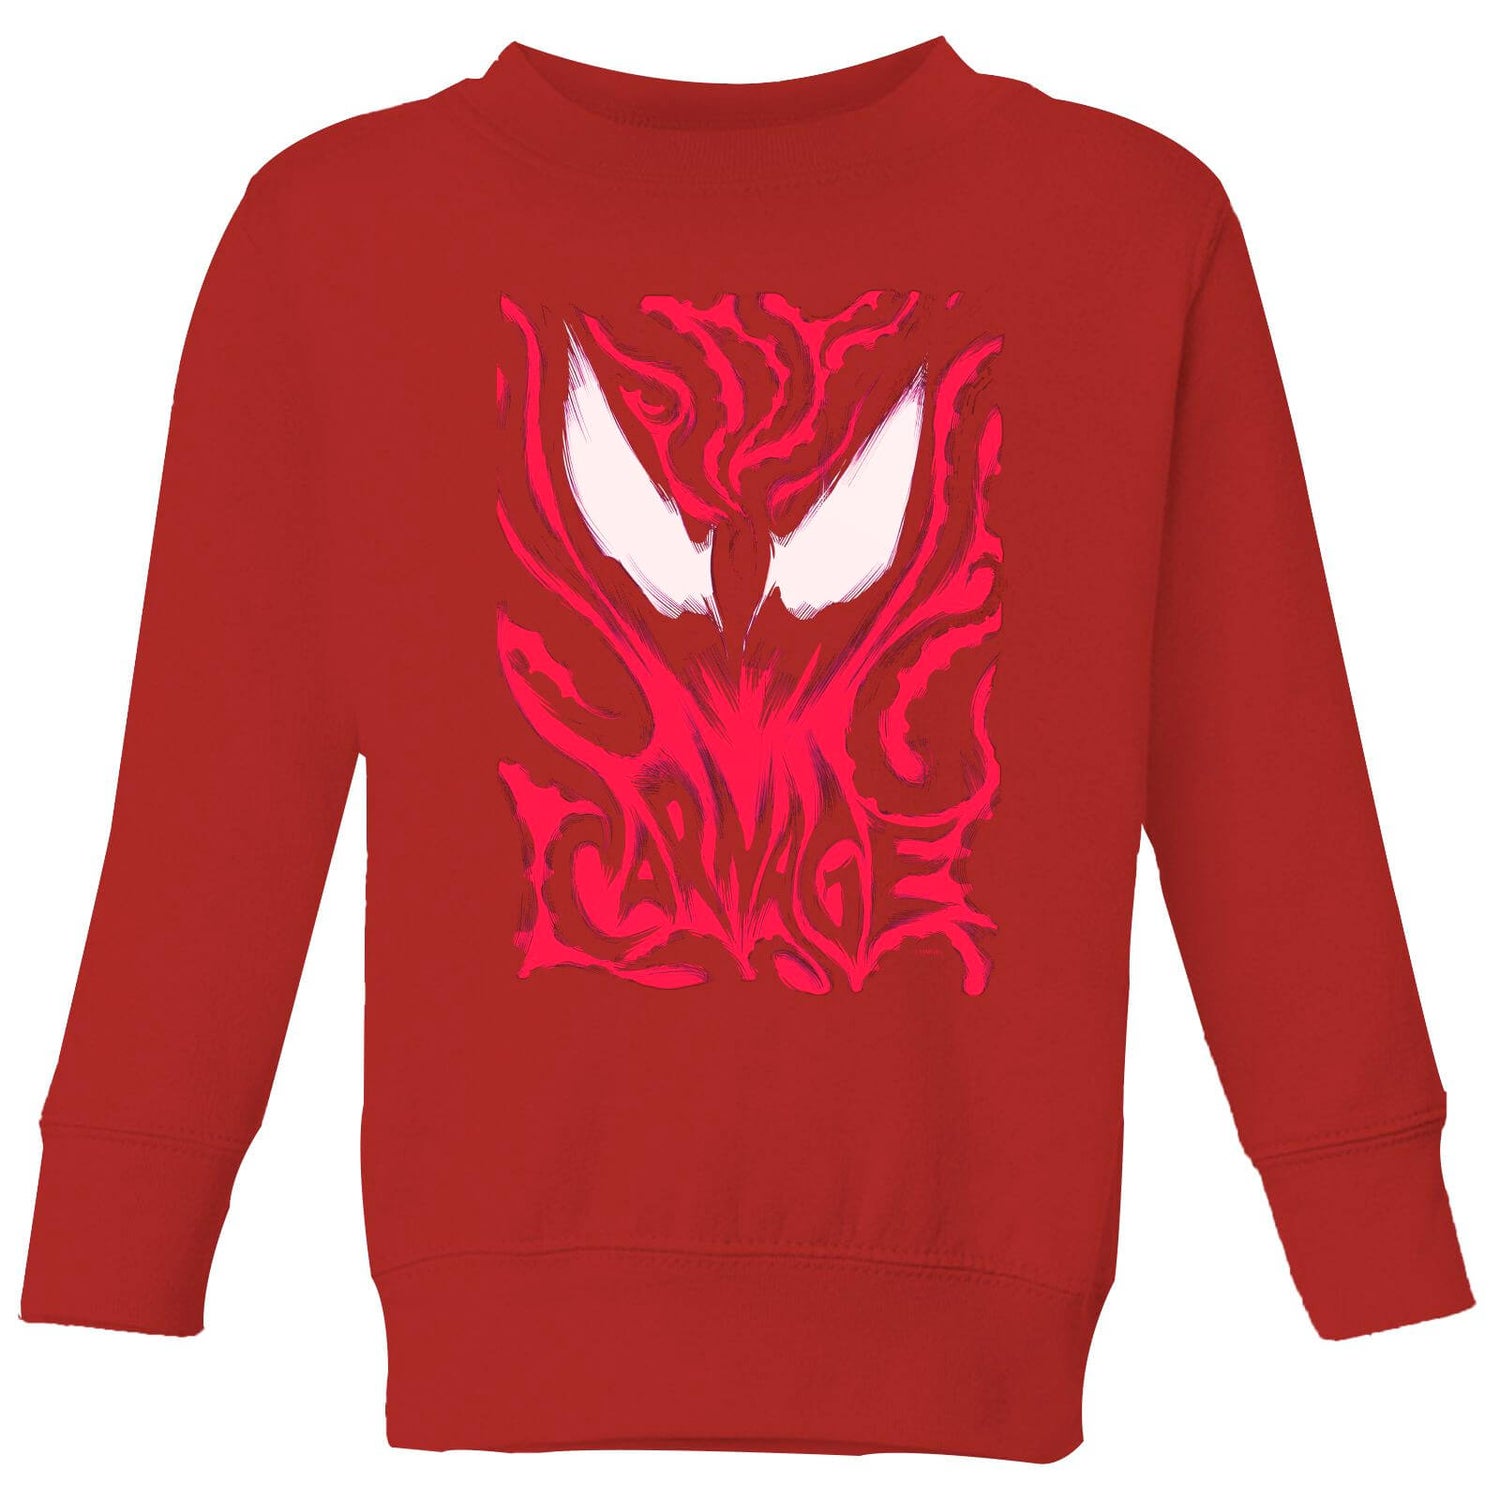 Venom Carnage Kids' Sweatshirt - Red